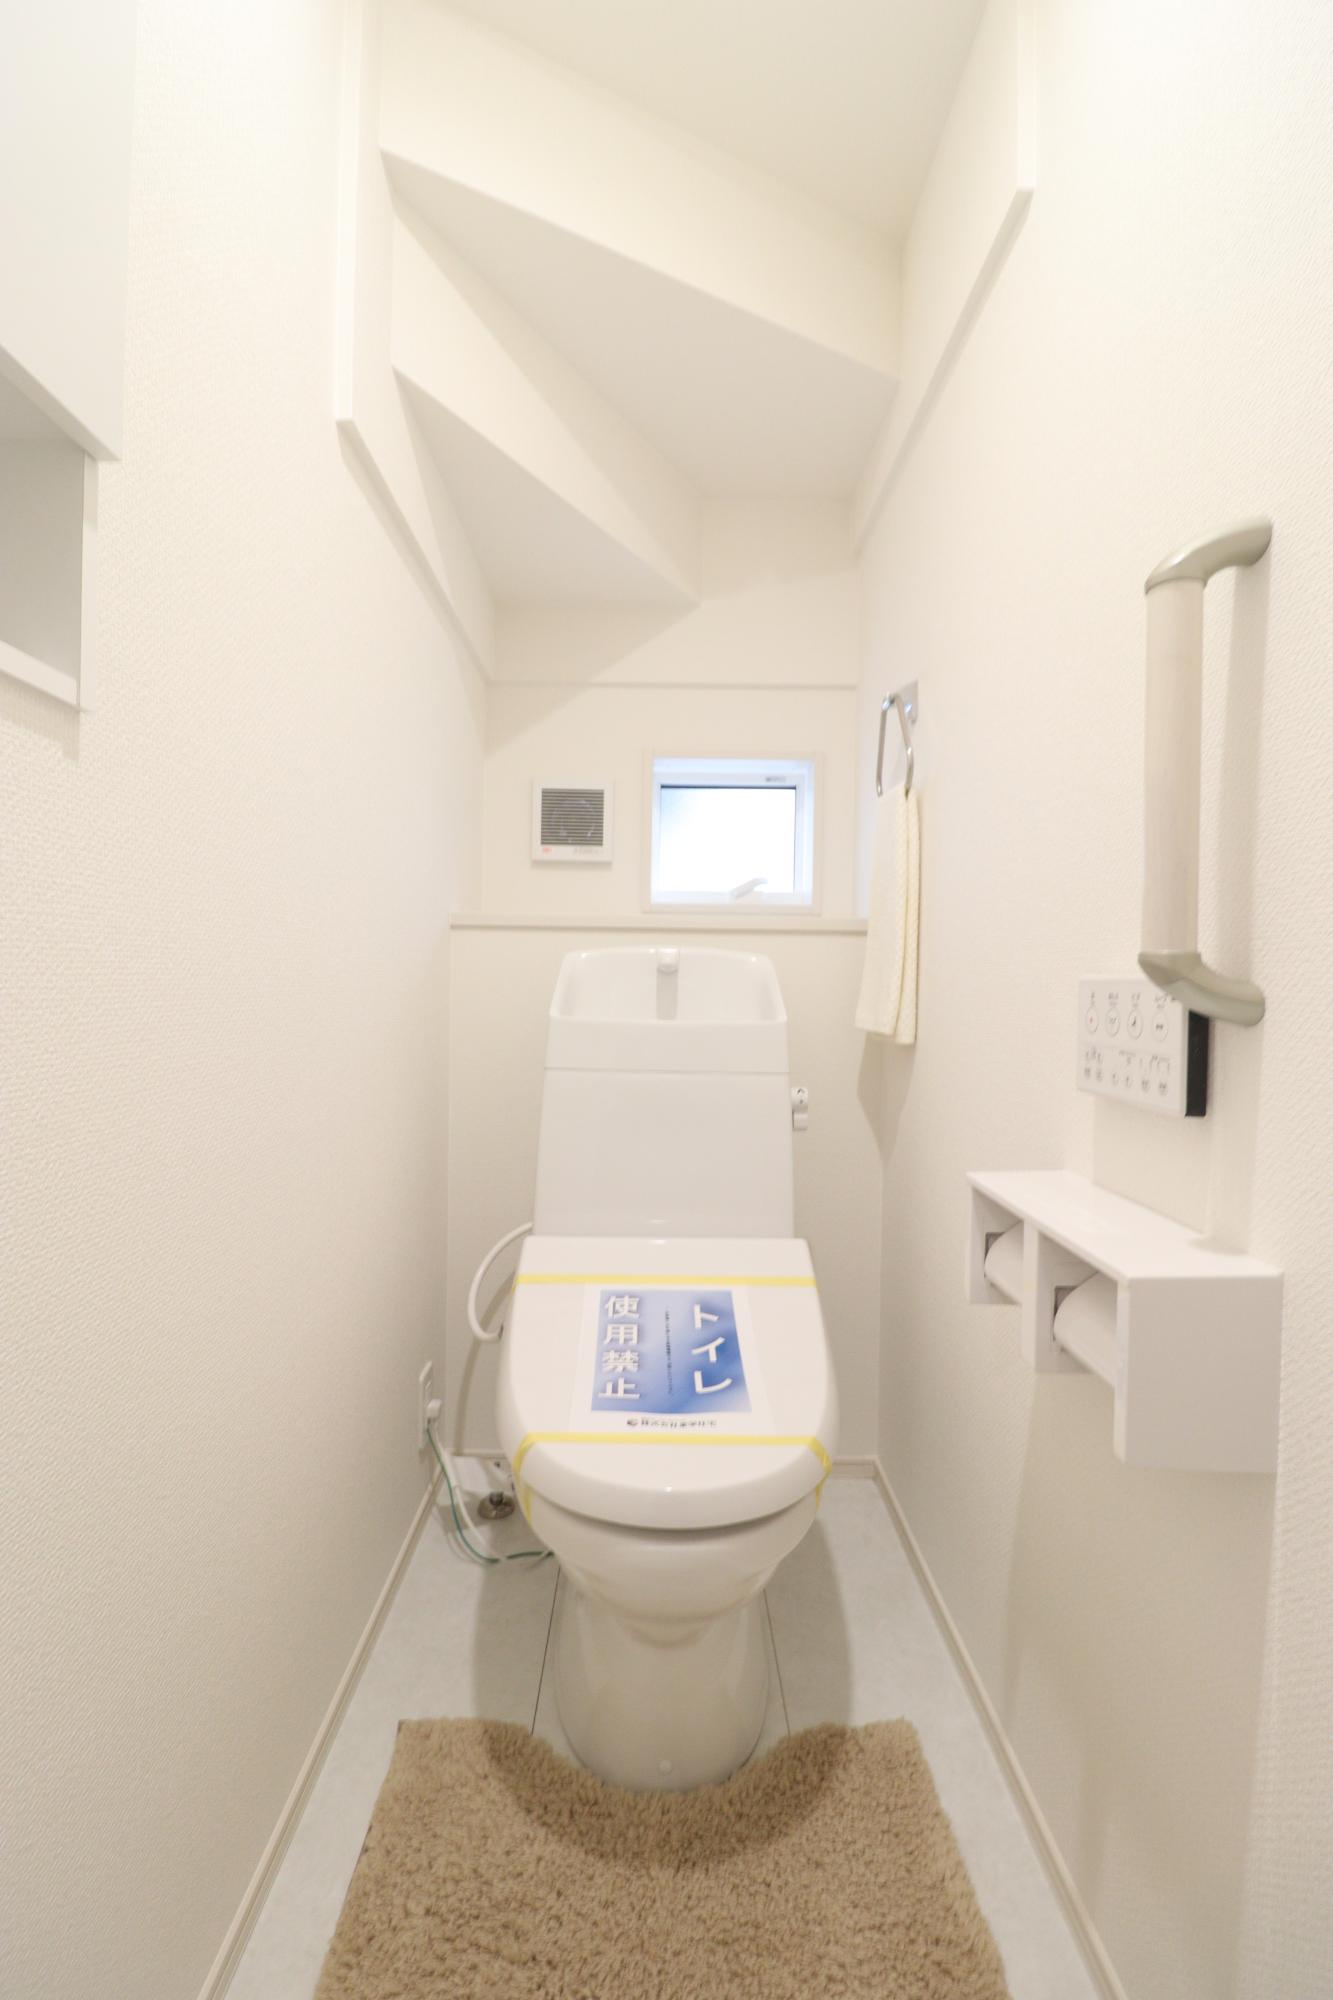 【トイレ】使い勝手に優れたワイヤレスリモコン式の温水洗浄便座!さらに収納棚も設置しているのでトイレ用品もスッキリと収納することができます♪